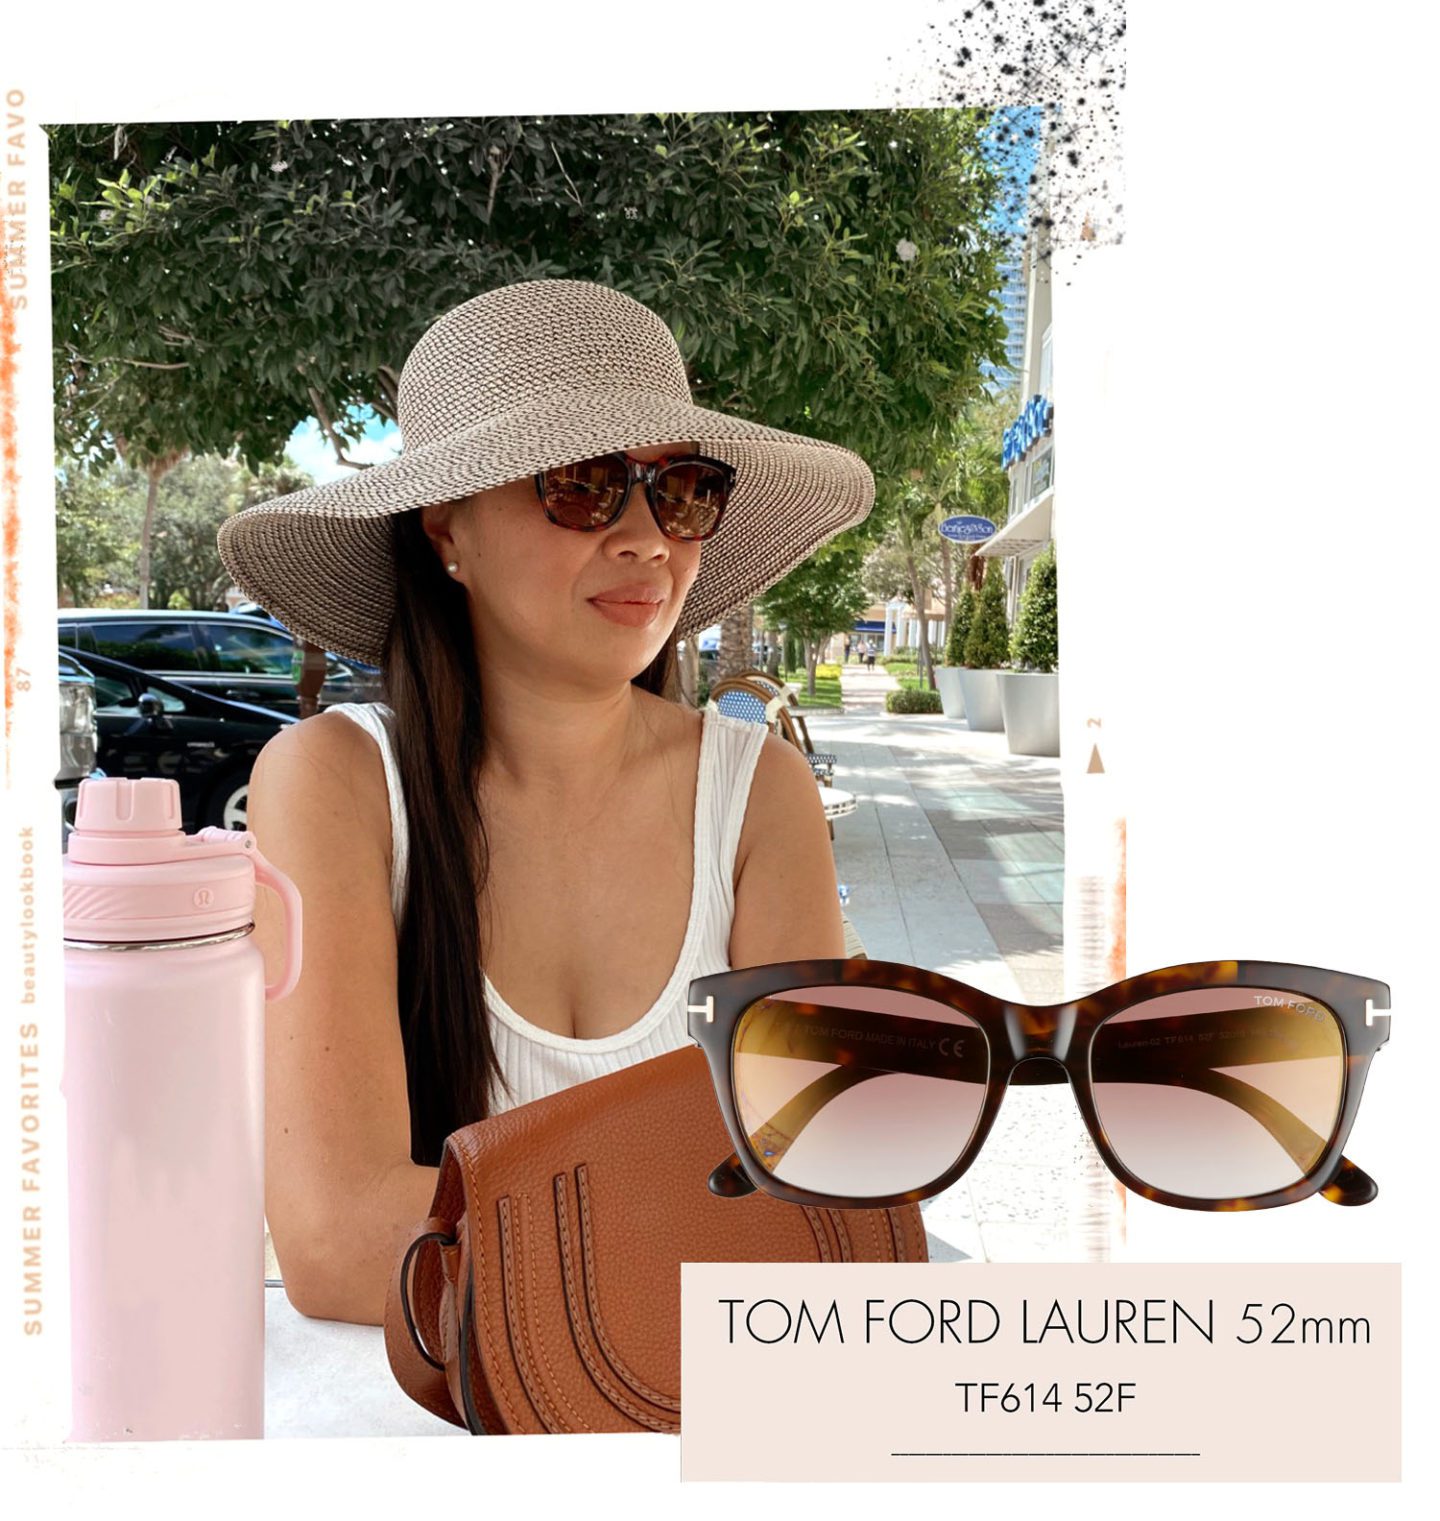 Tom Ford Lauren Sunglasses